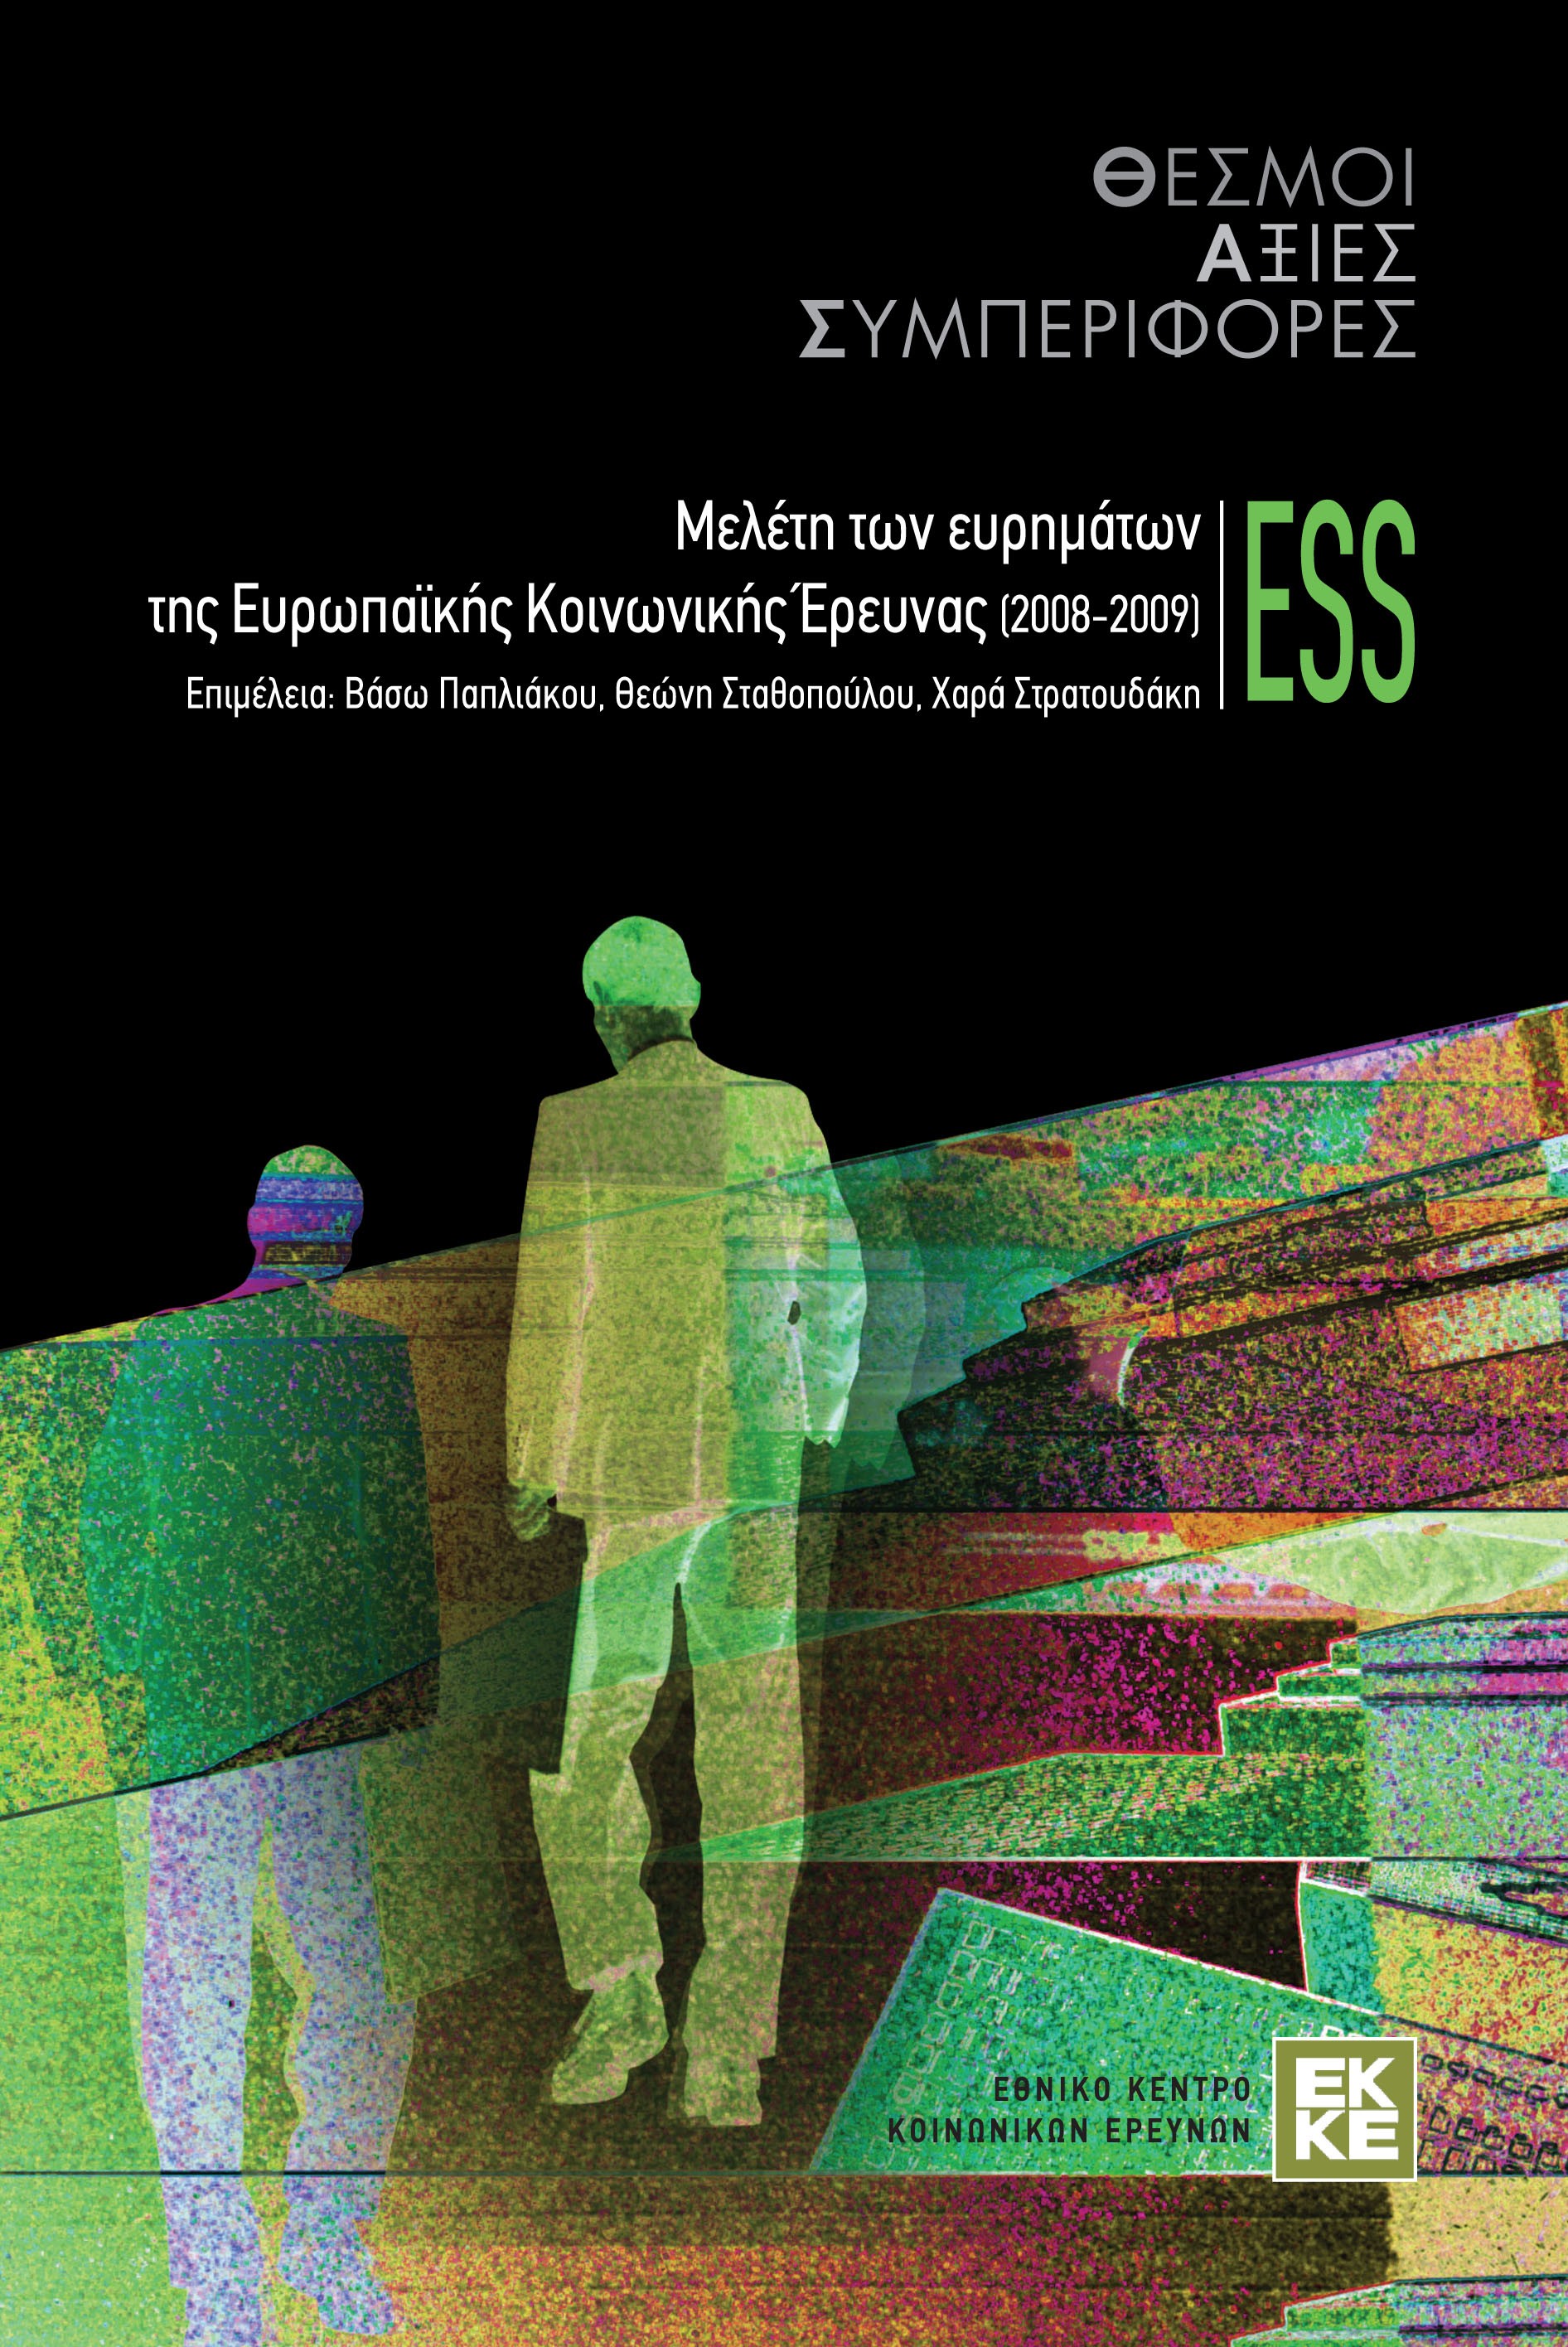 Θεσμοί αξίες συμπεριφορές: Μελέτη των ευρημάτων της Ευρωπαϊκής Κοινωνικής Έρευνας (2008-2009) ESS